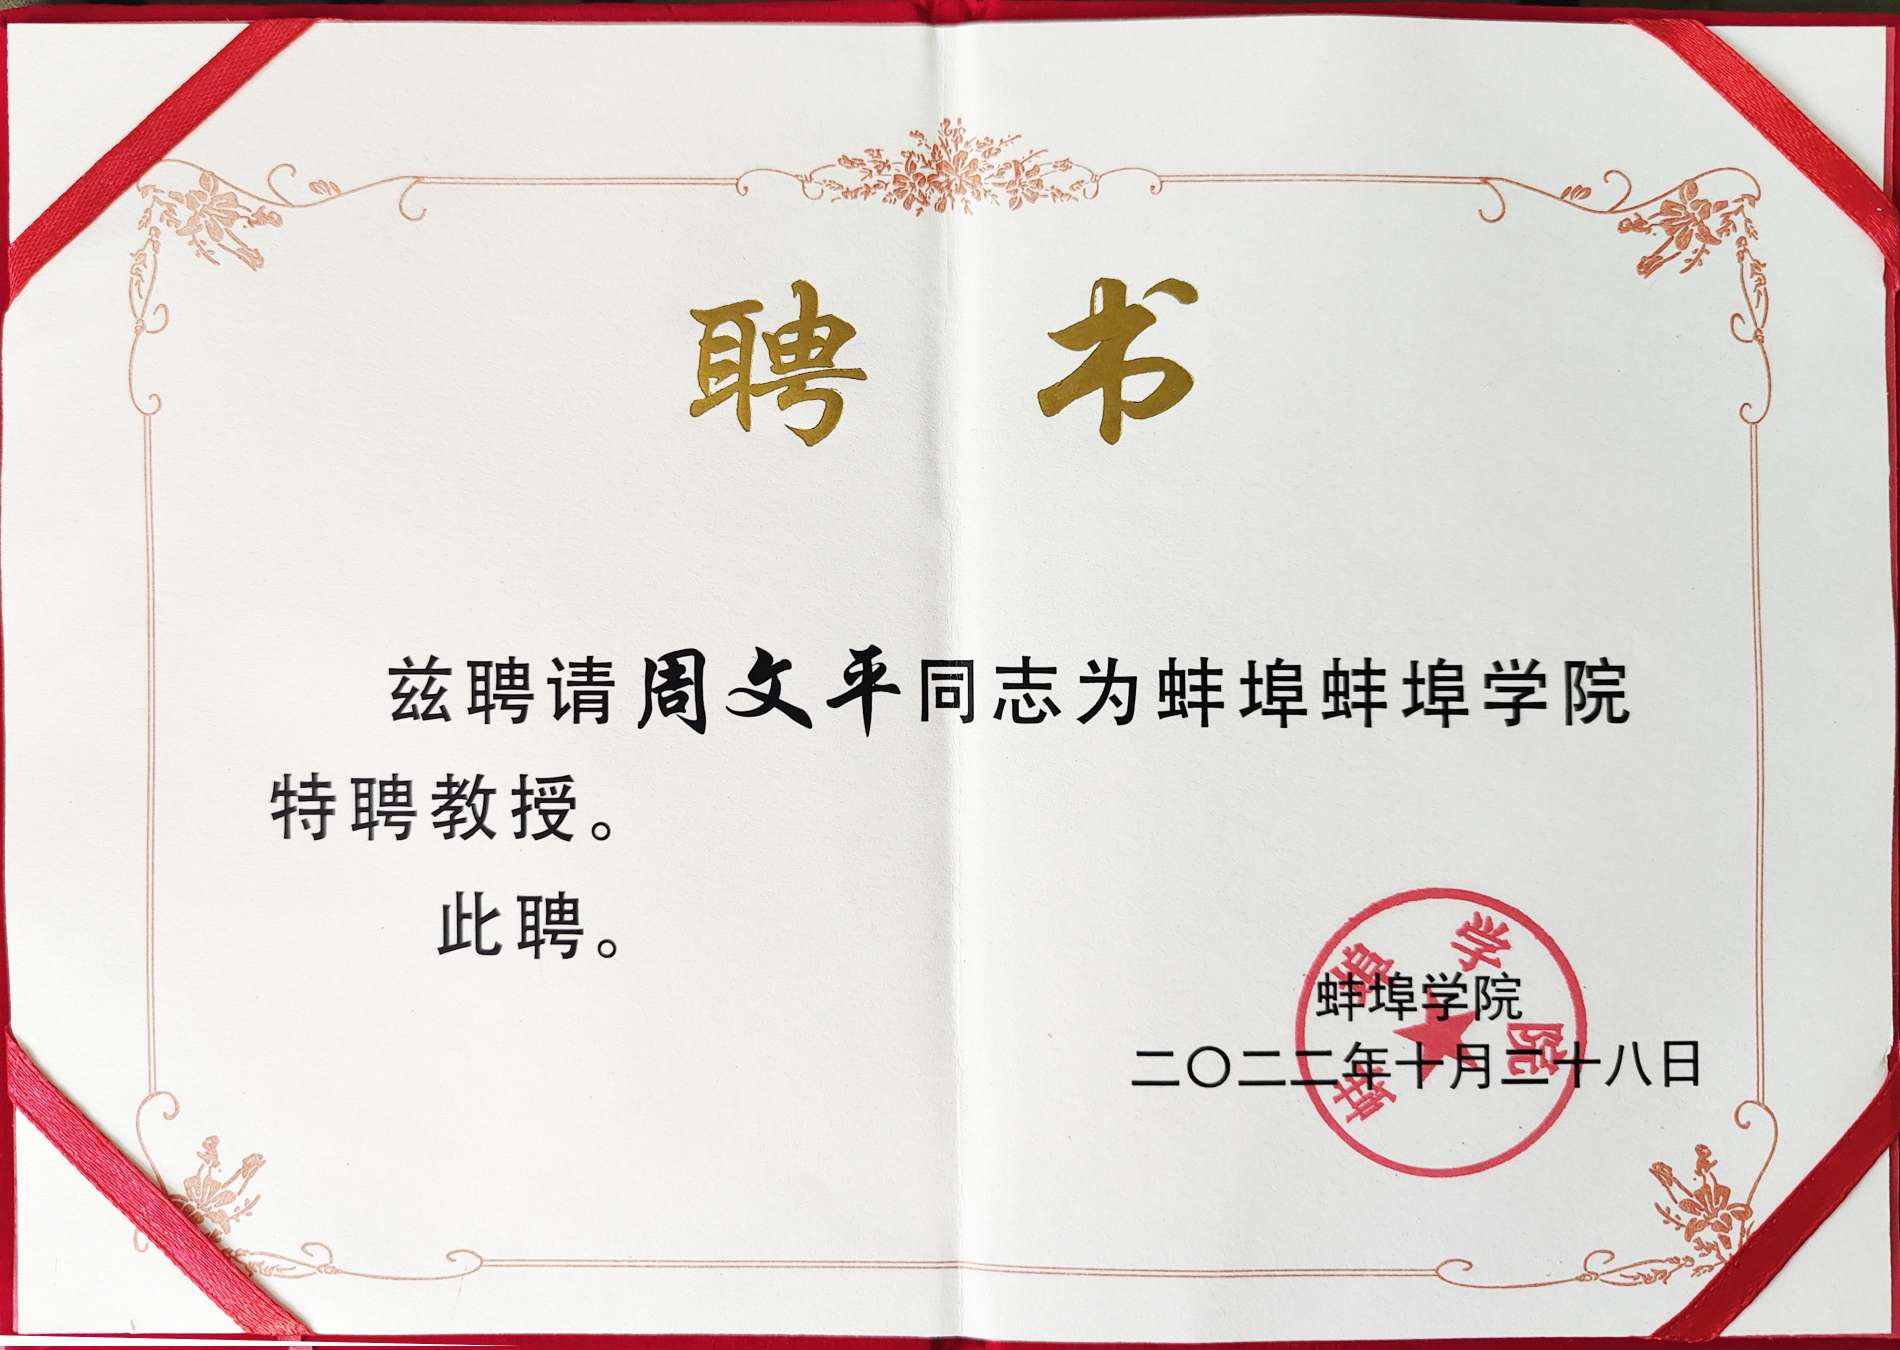 Das Bengbu College verlieh Long Hua Zhou Wenping die Ehrenurkunde „Distinguished Professor“!